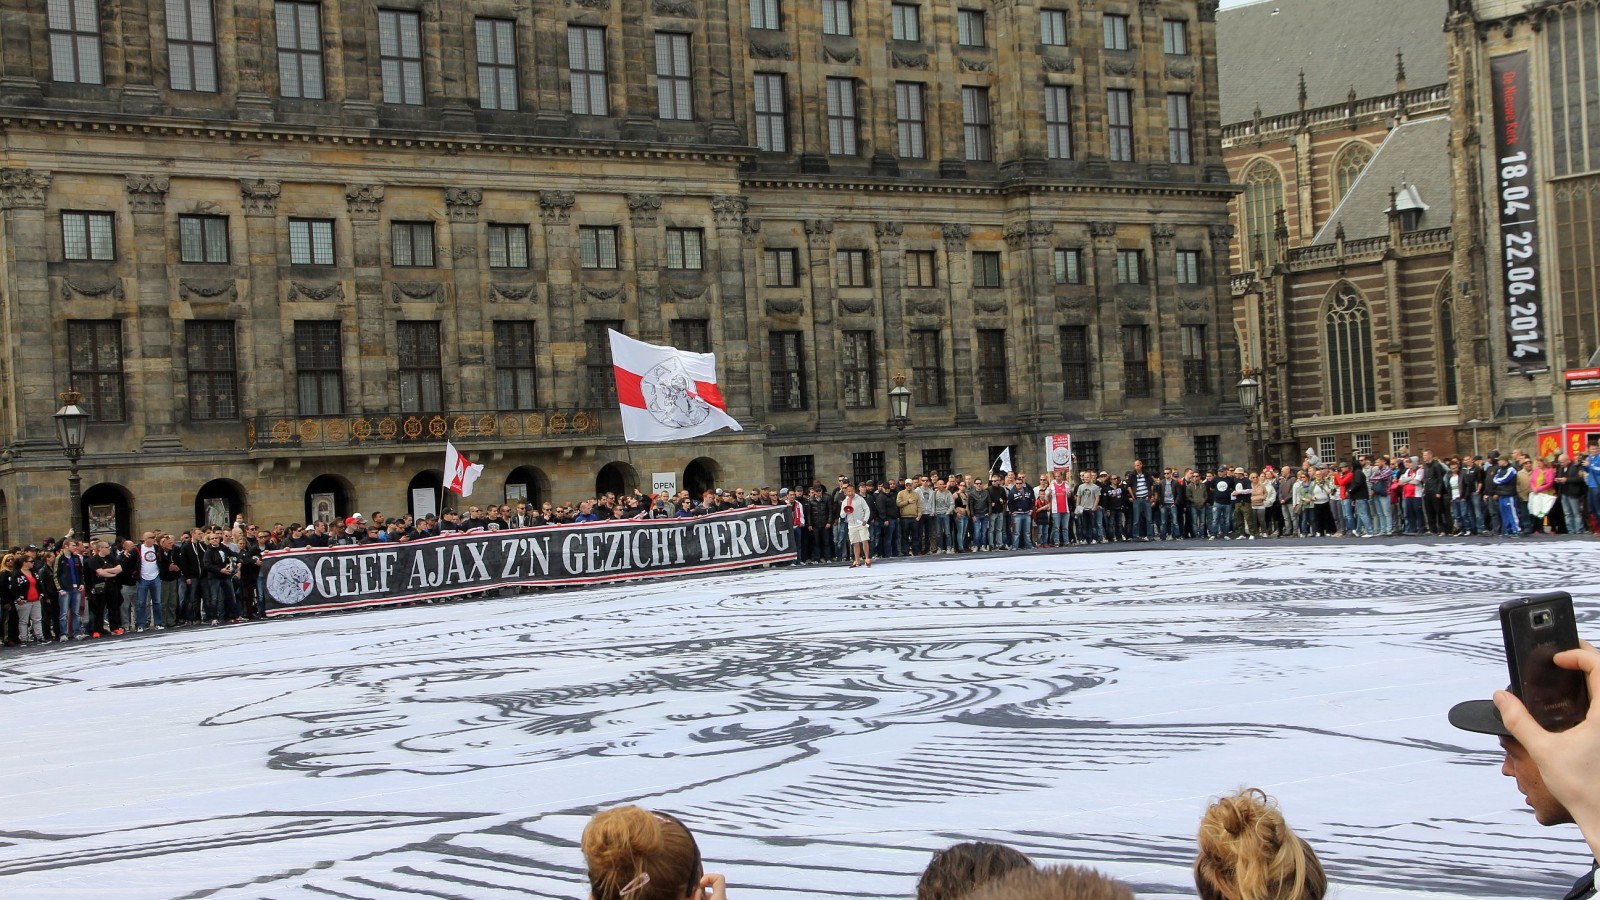 Ajax protestmars